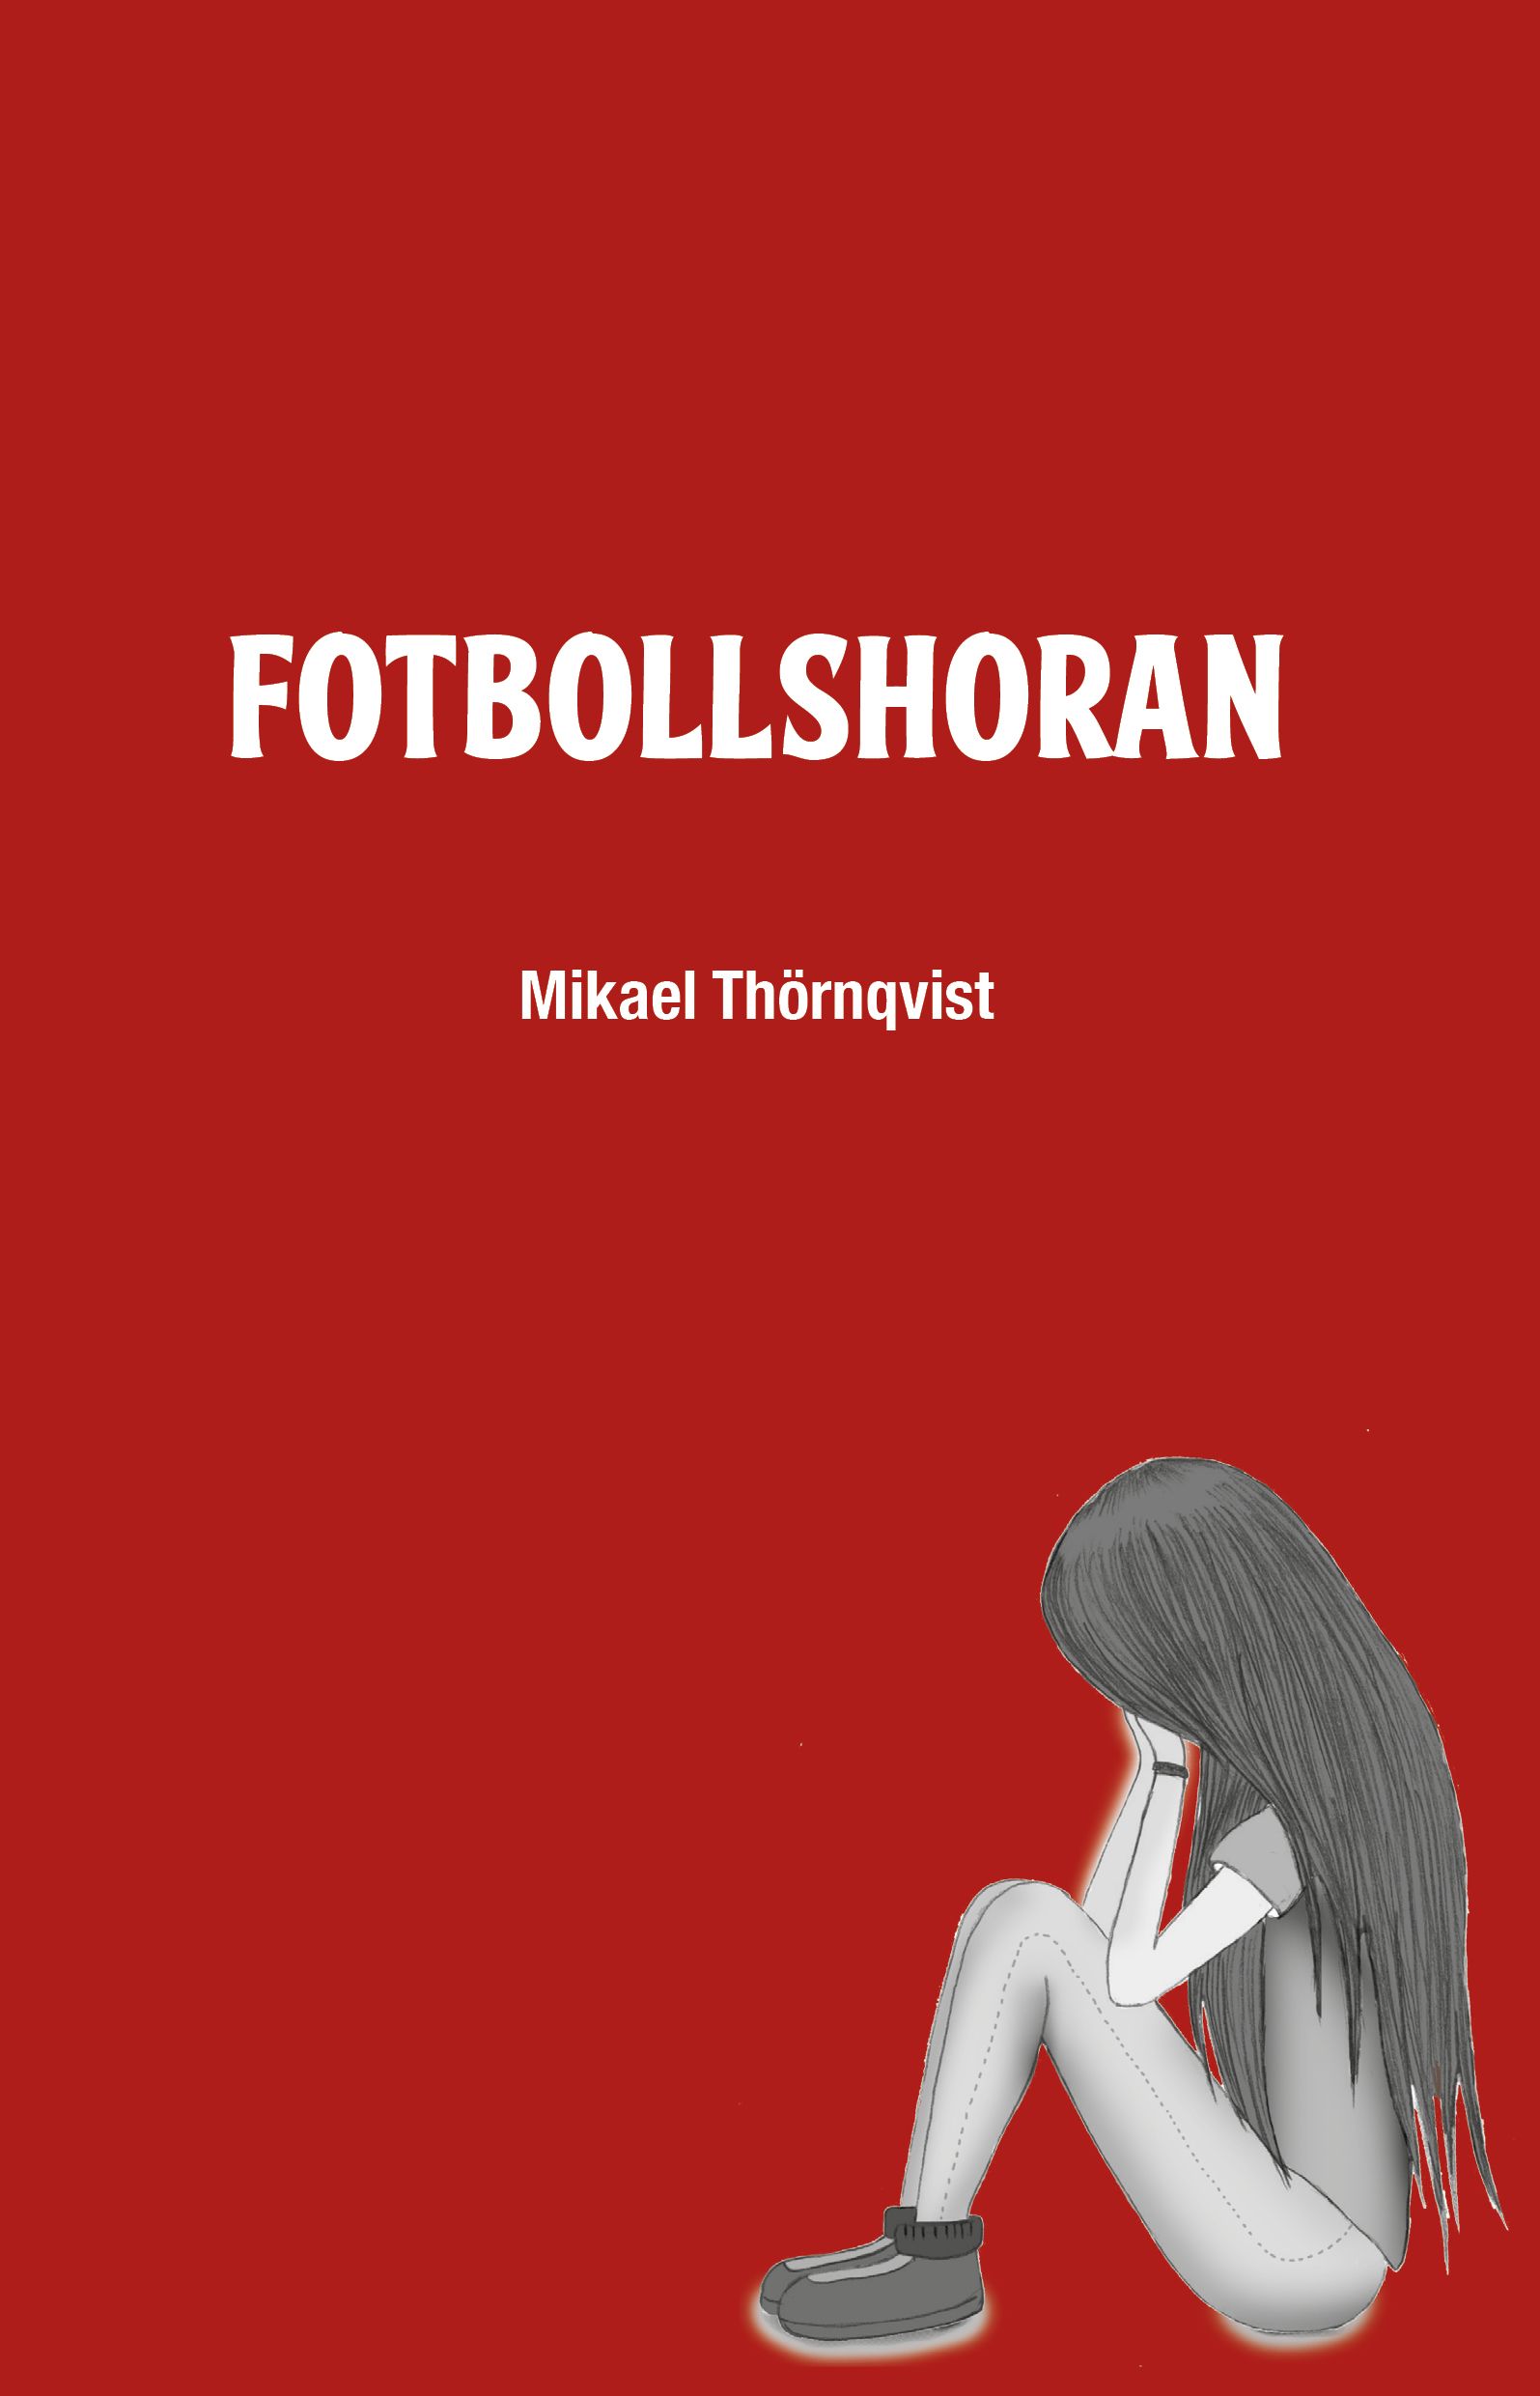 Fotbollshoran, e-bog af Mikael Thörnqvist